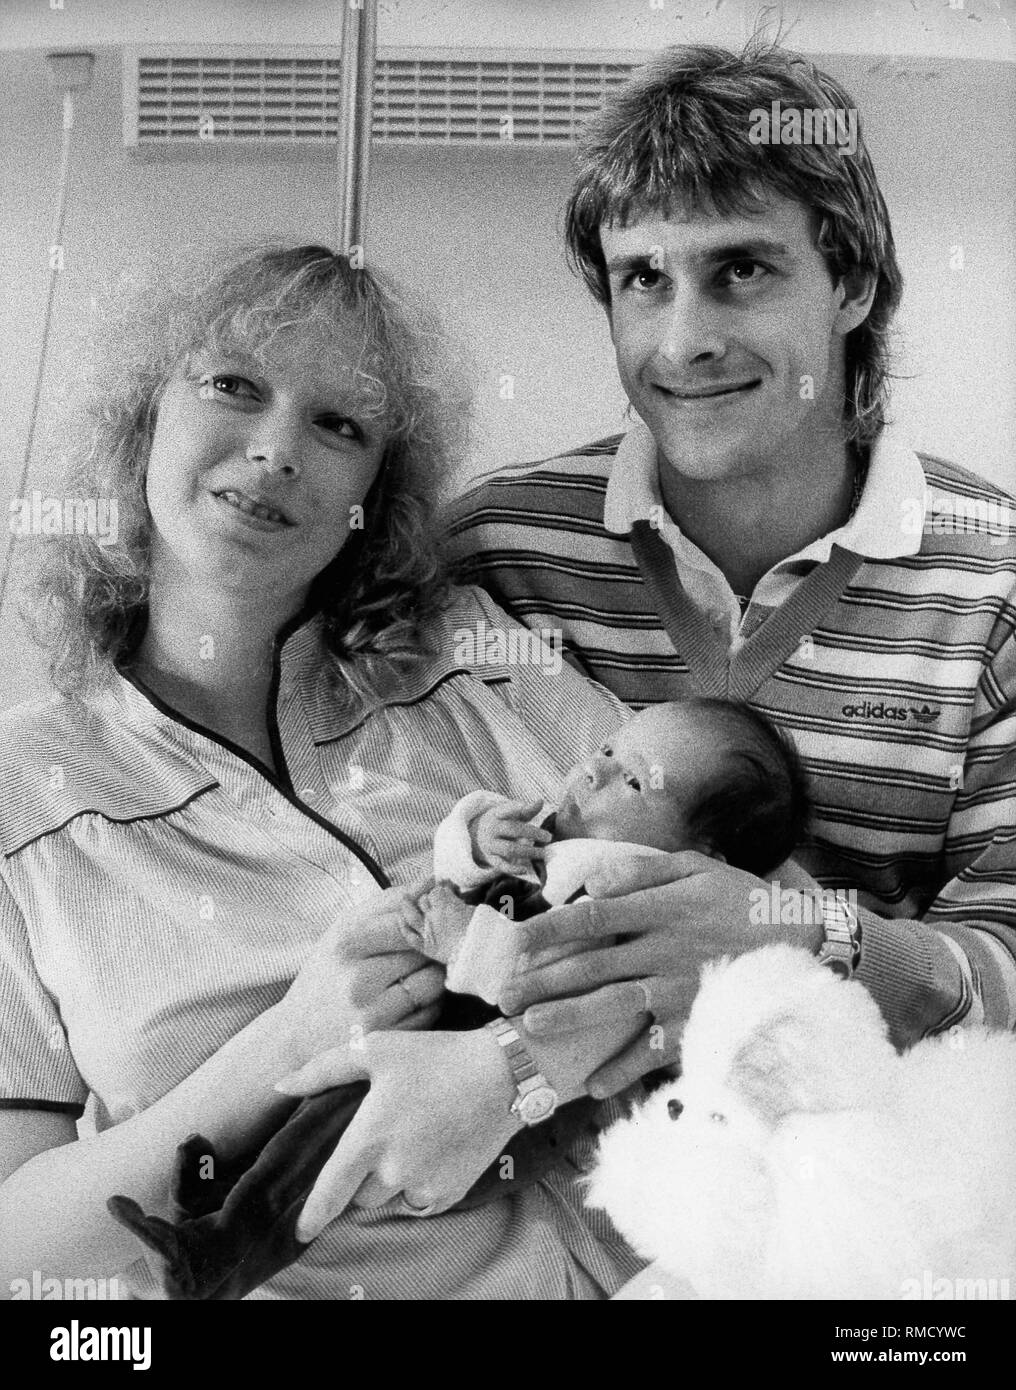 Pierre Littbarski, seine Frau Monika und ihrer neugeborenen Tochter Denise  Stockfotografie - Alamy